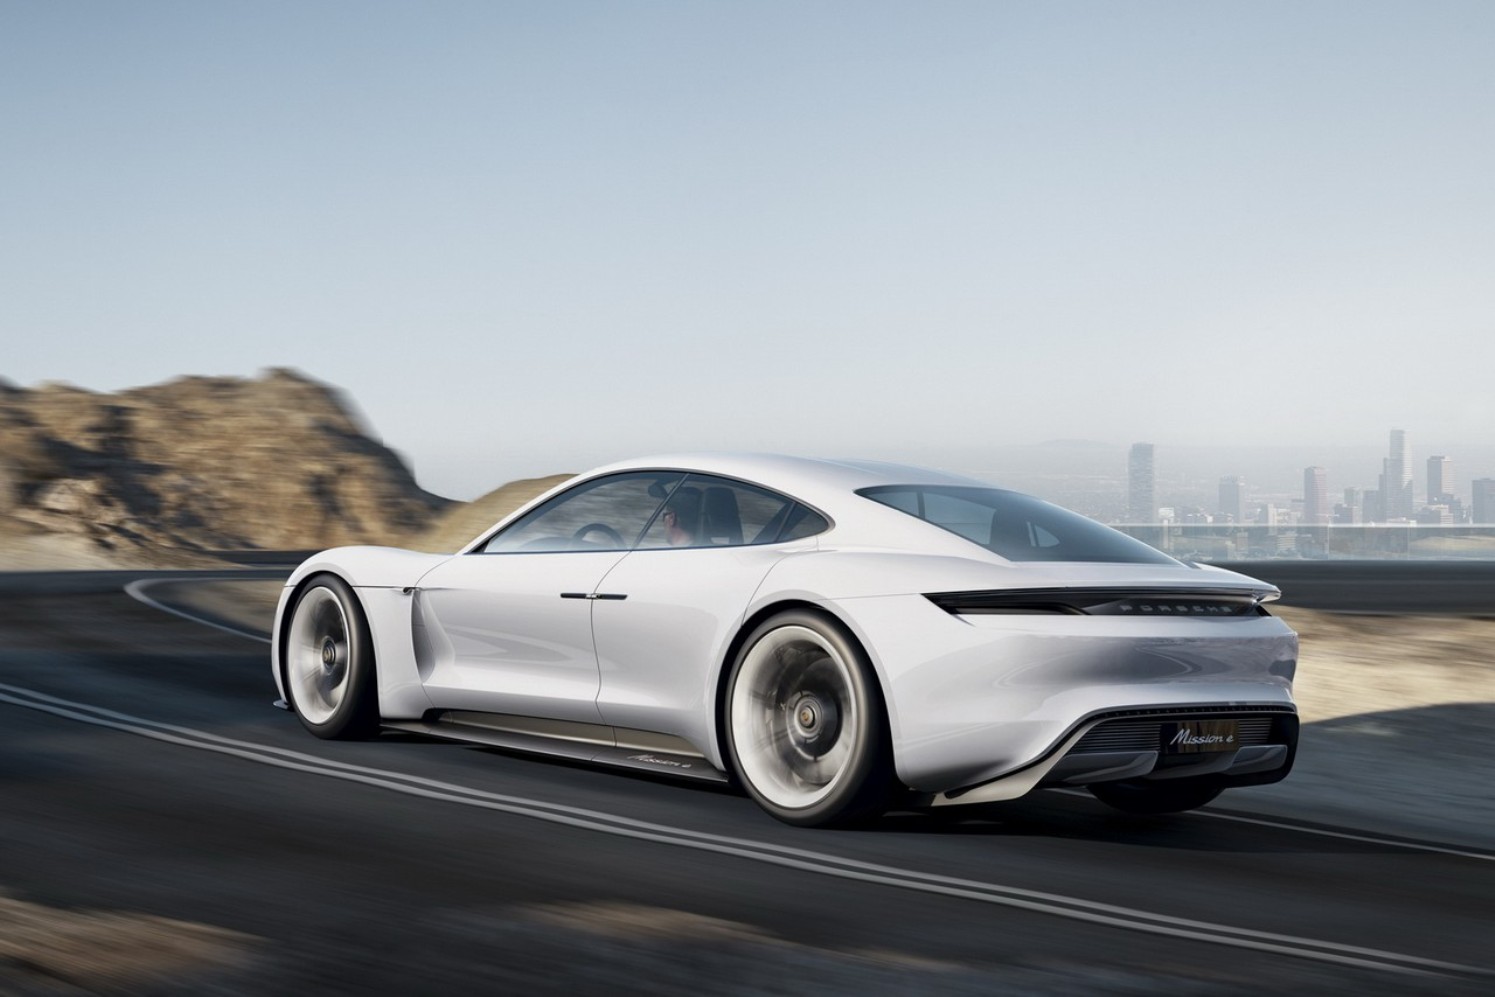 Las reservas del Porsche Taycan ya cubren su primer año de producción, y apunta que harán daño a Tesla